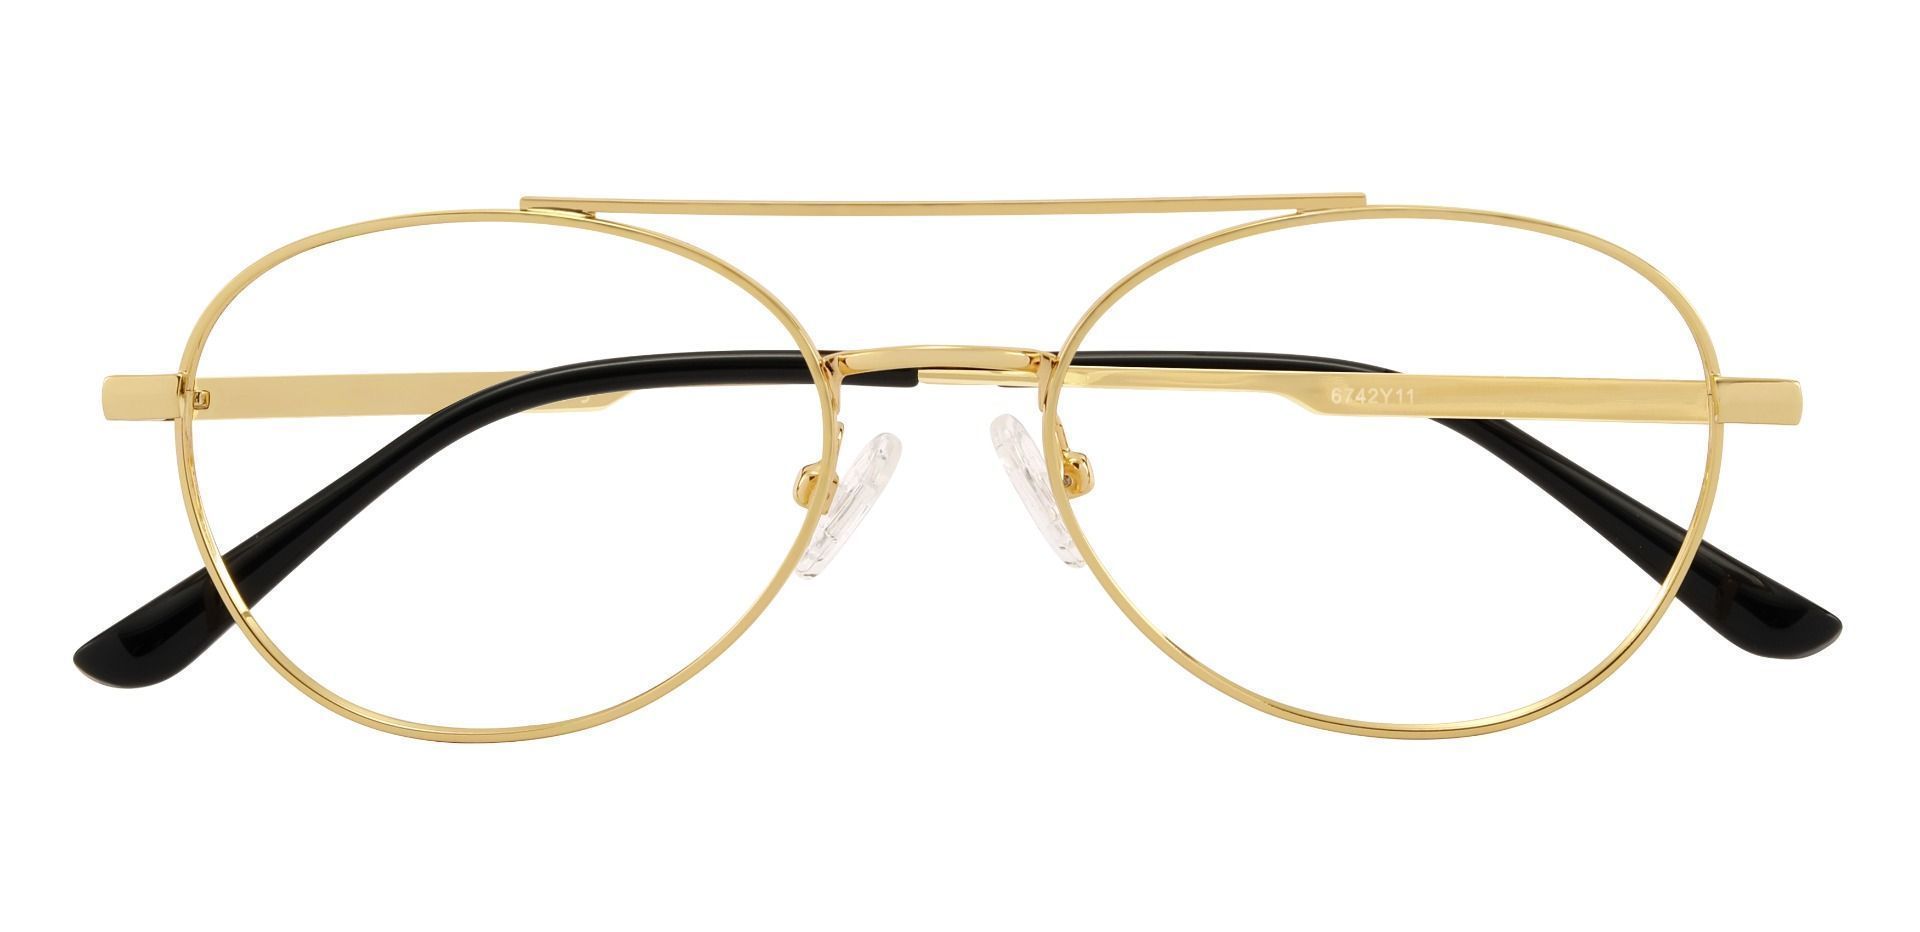 Hinton Aviator Prescription Glasses - Gold